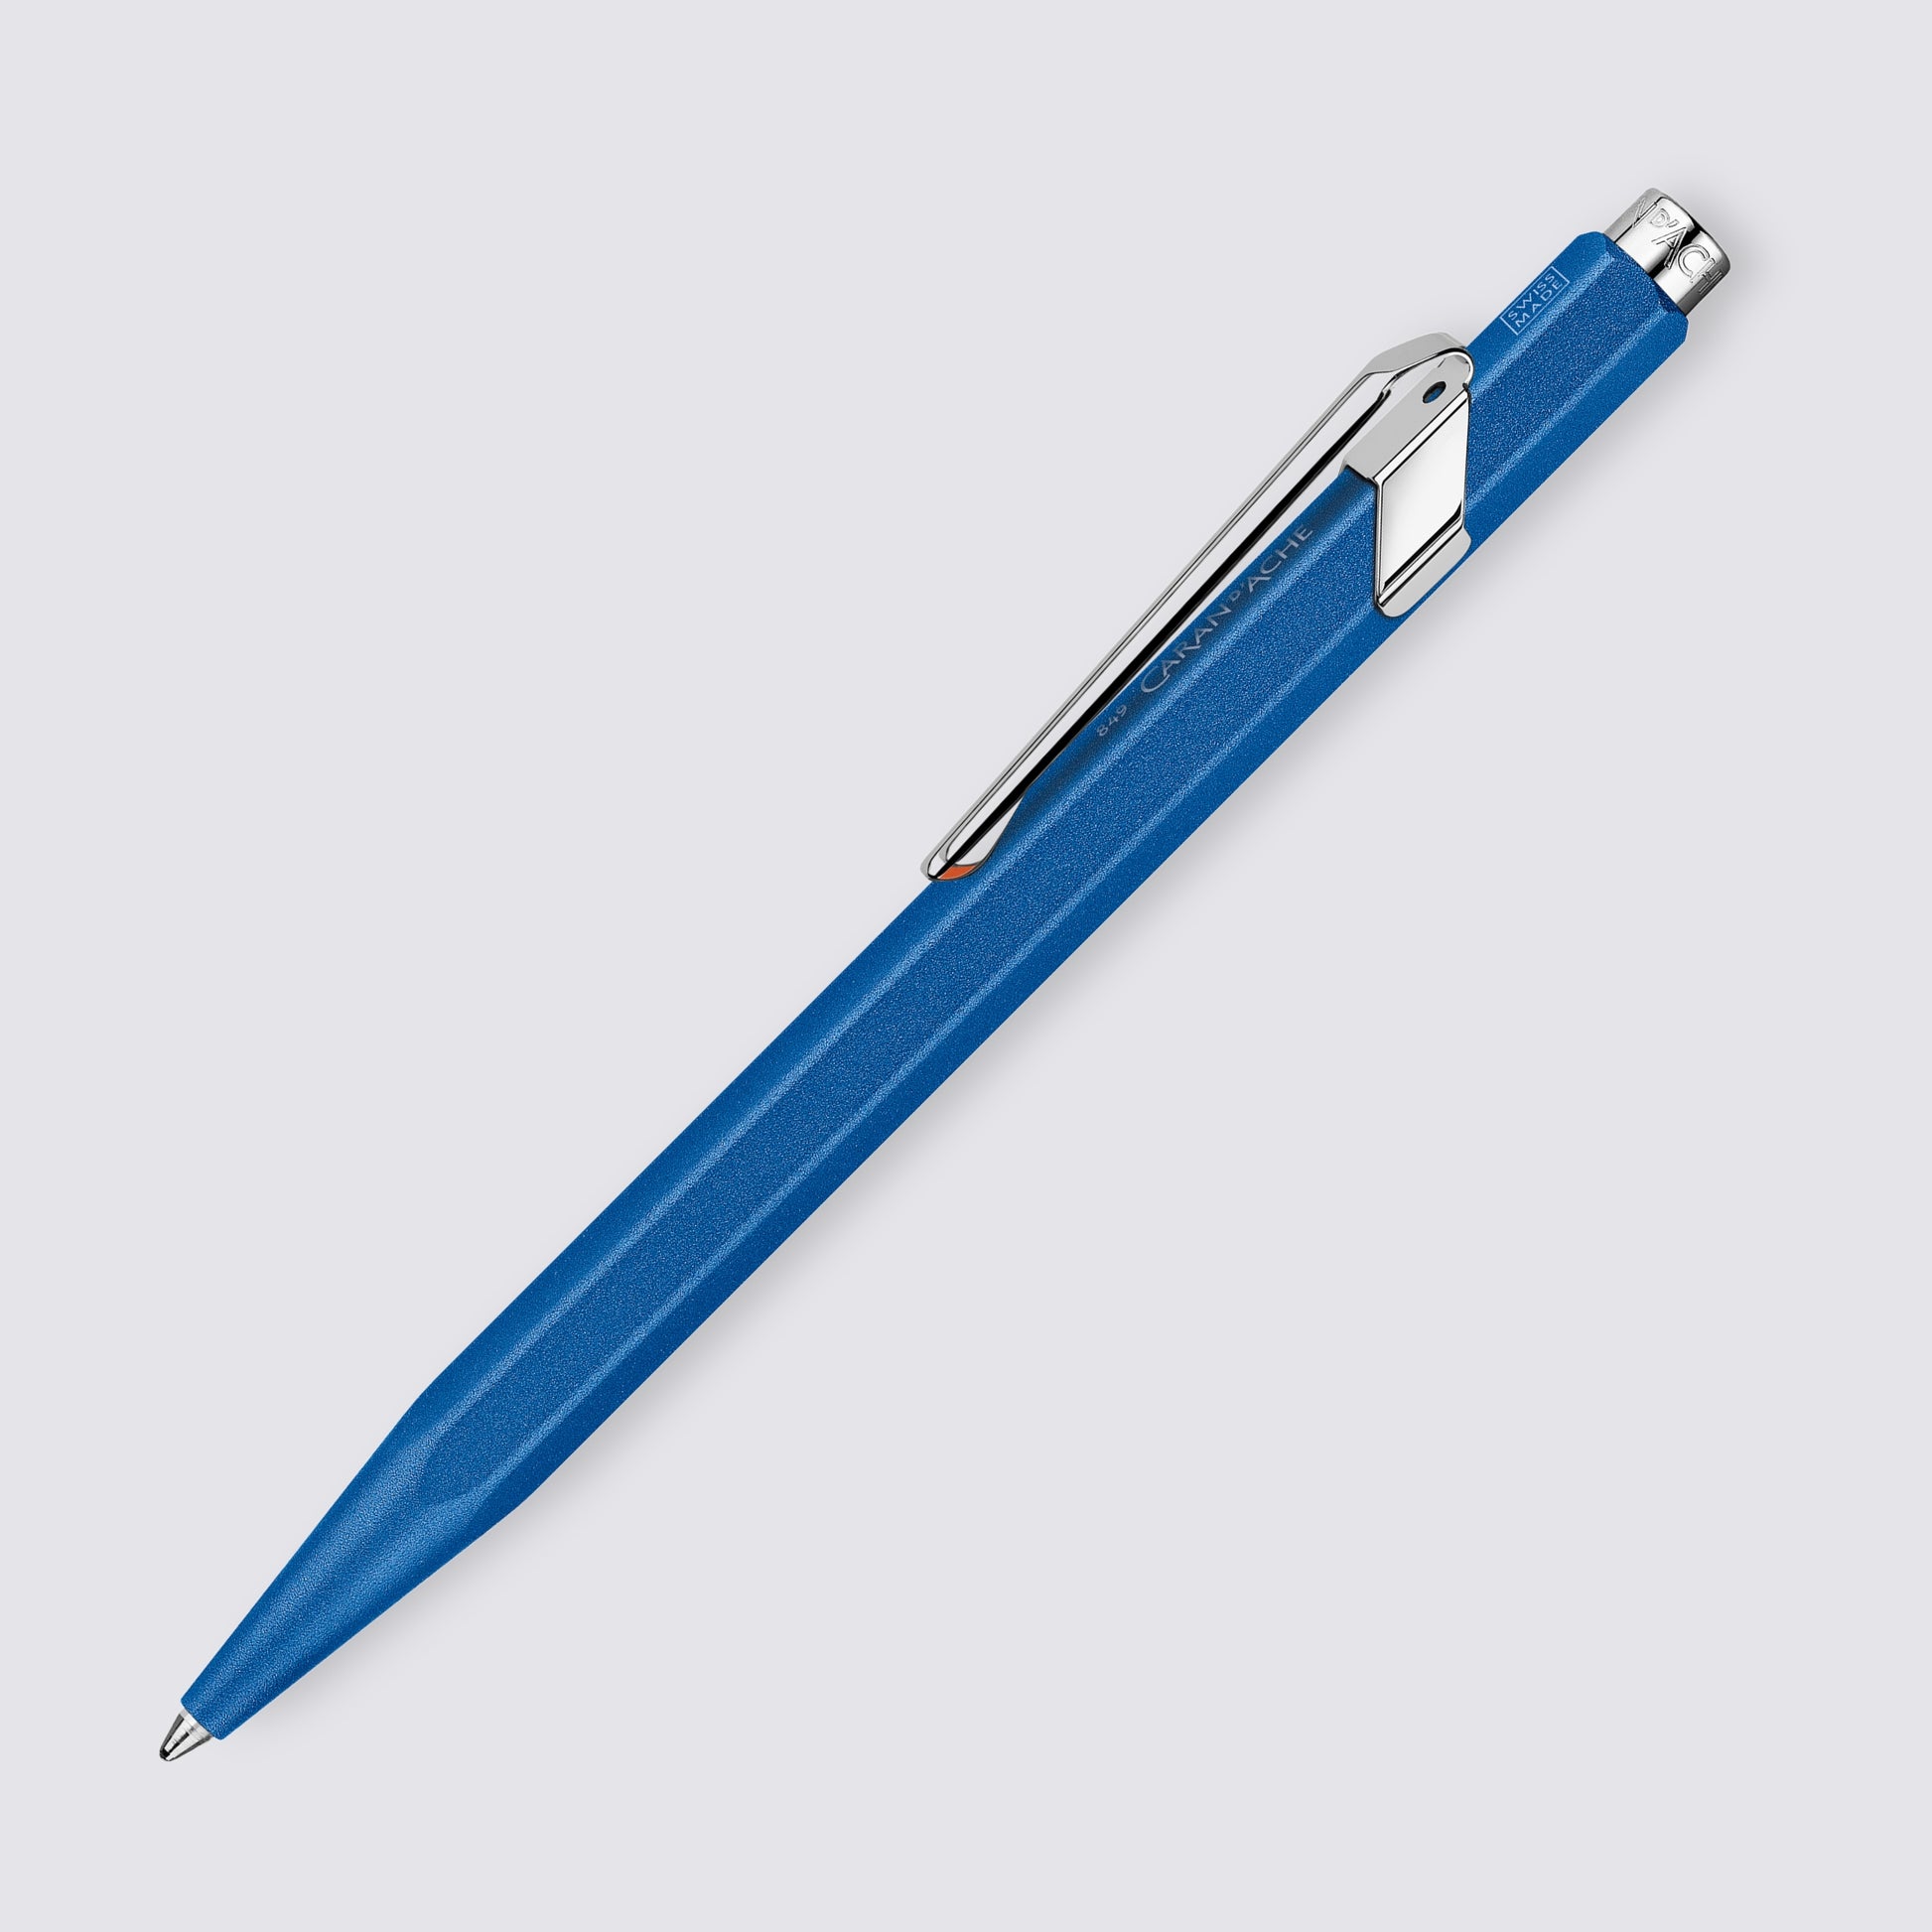 COLORMAT-X Pen Blue